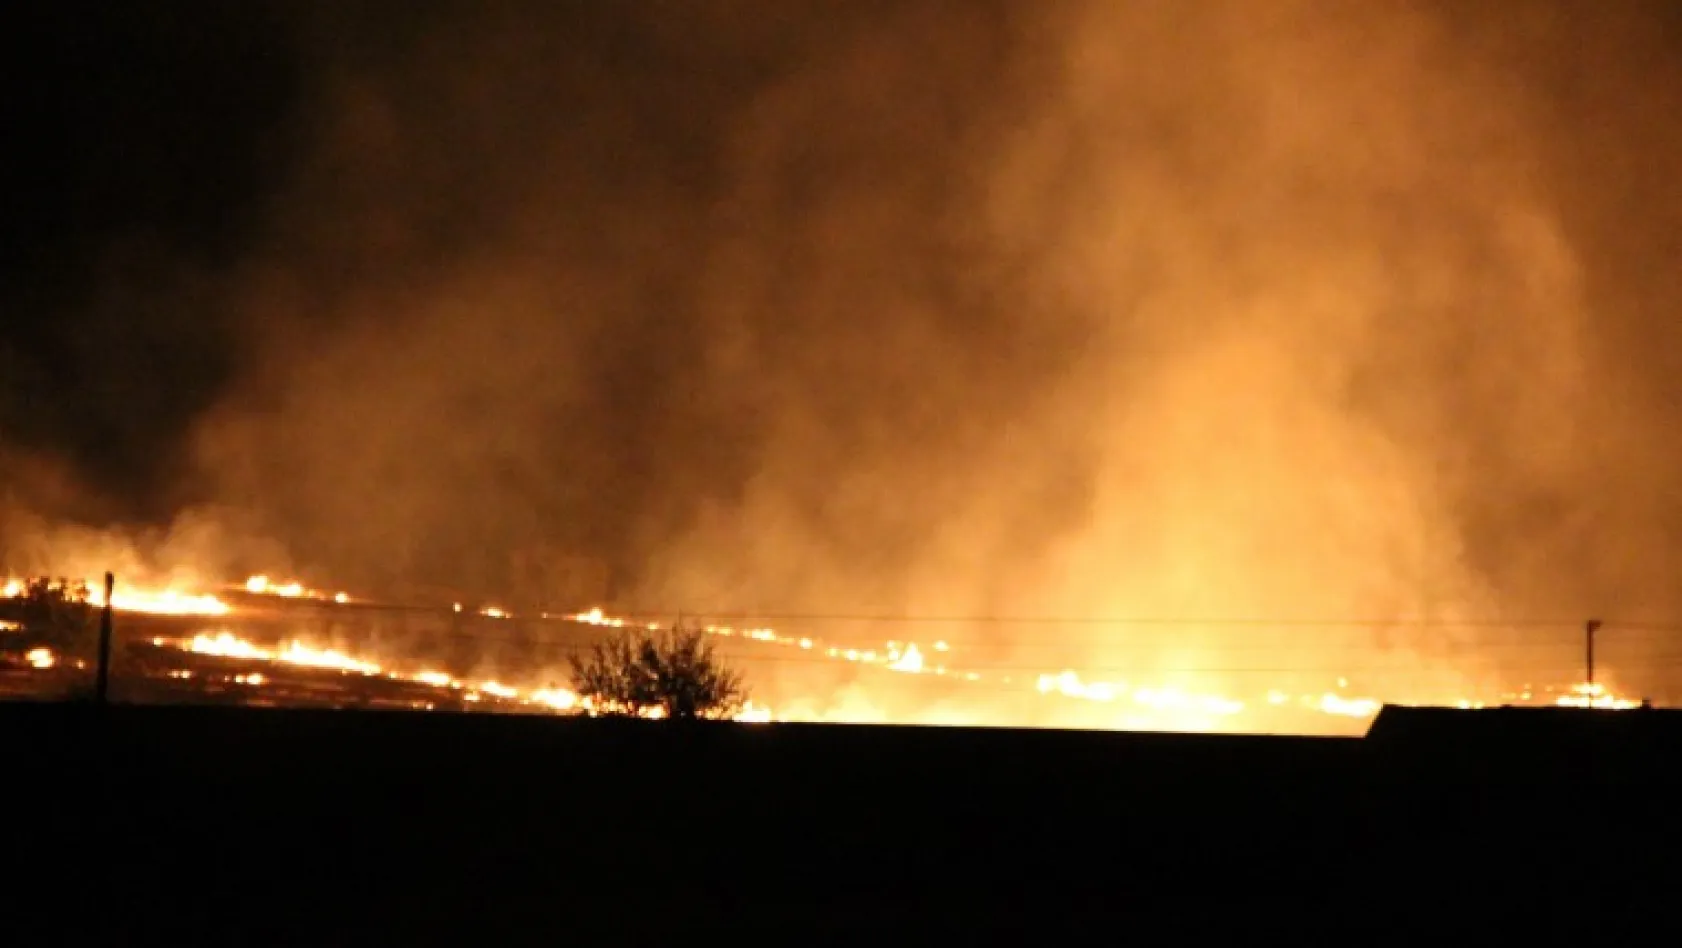 Elazığ'da yangın